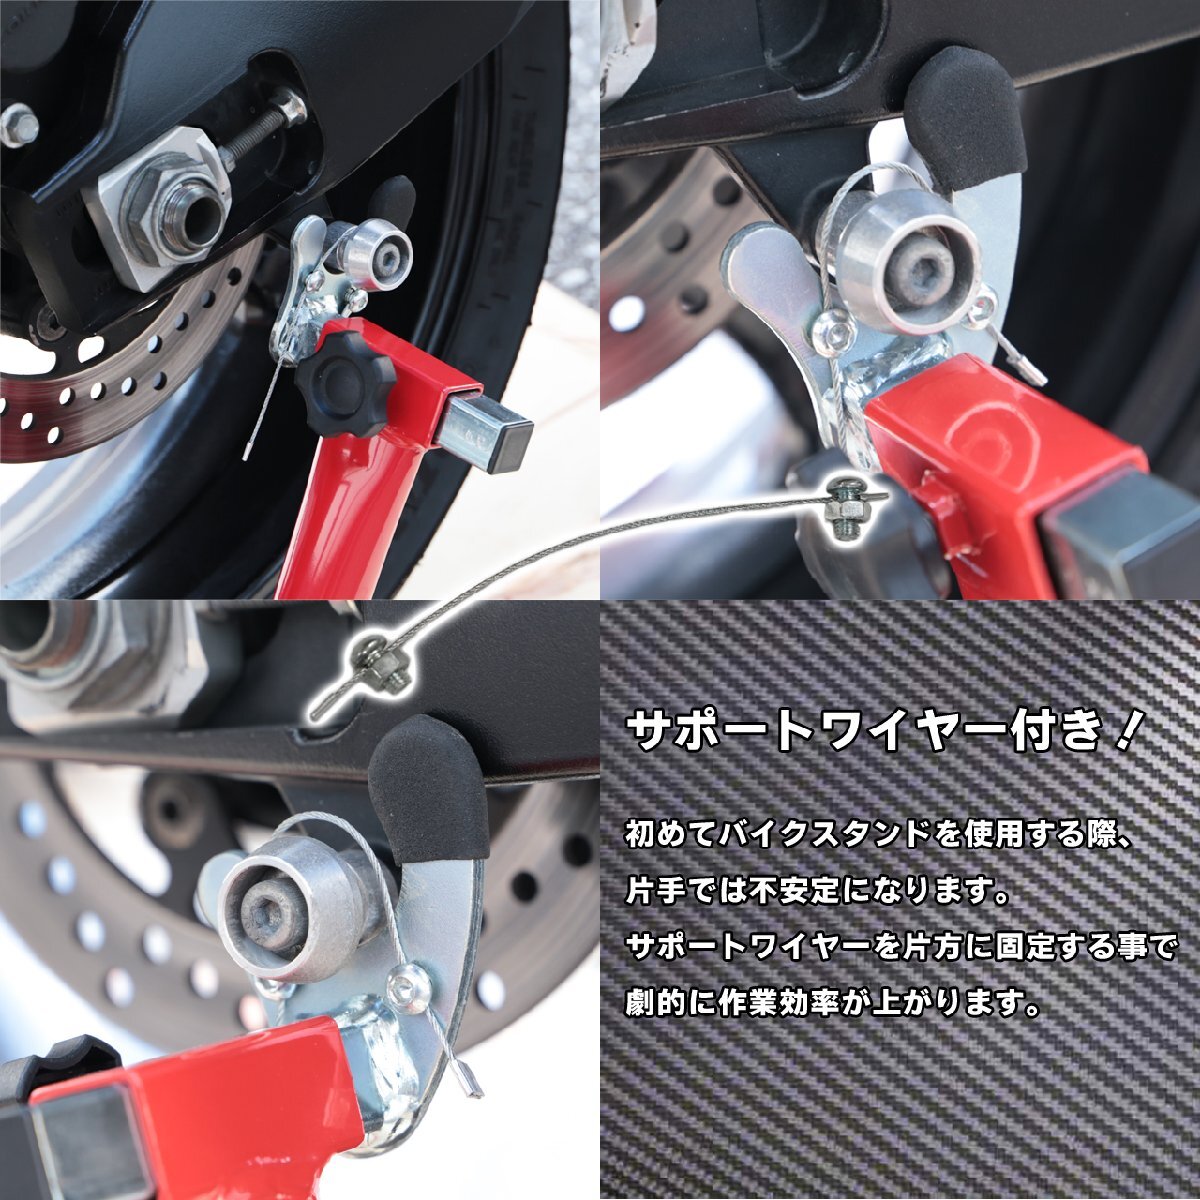 1 иен ~ задний мотоцикл подставка задний техническое обслуживание подставка 007V поддержка тросик имеется TSB024 [1 год с гарантией ]